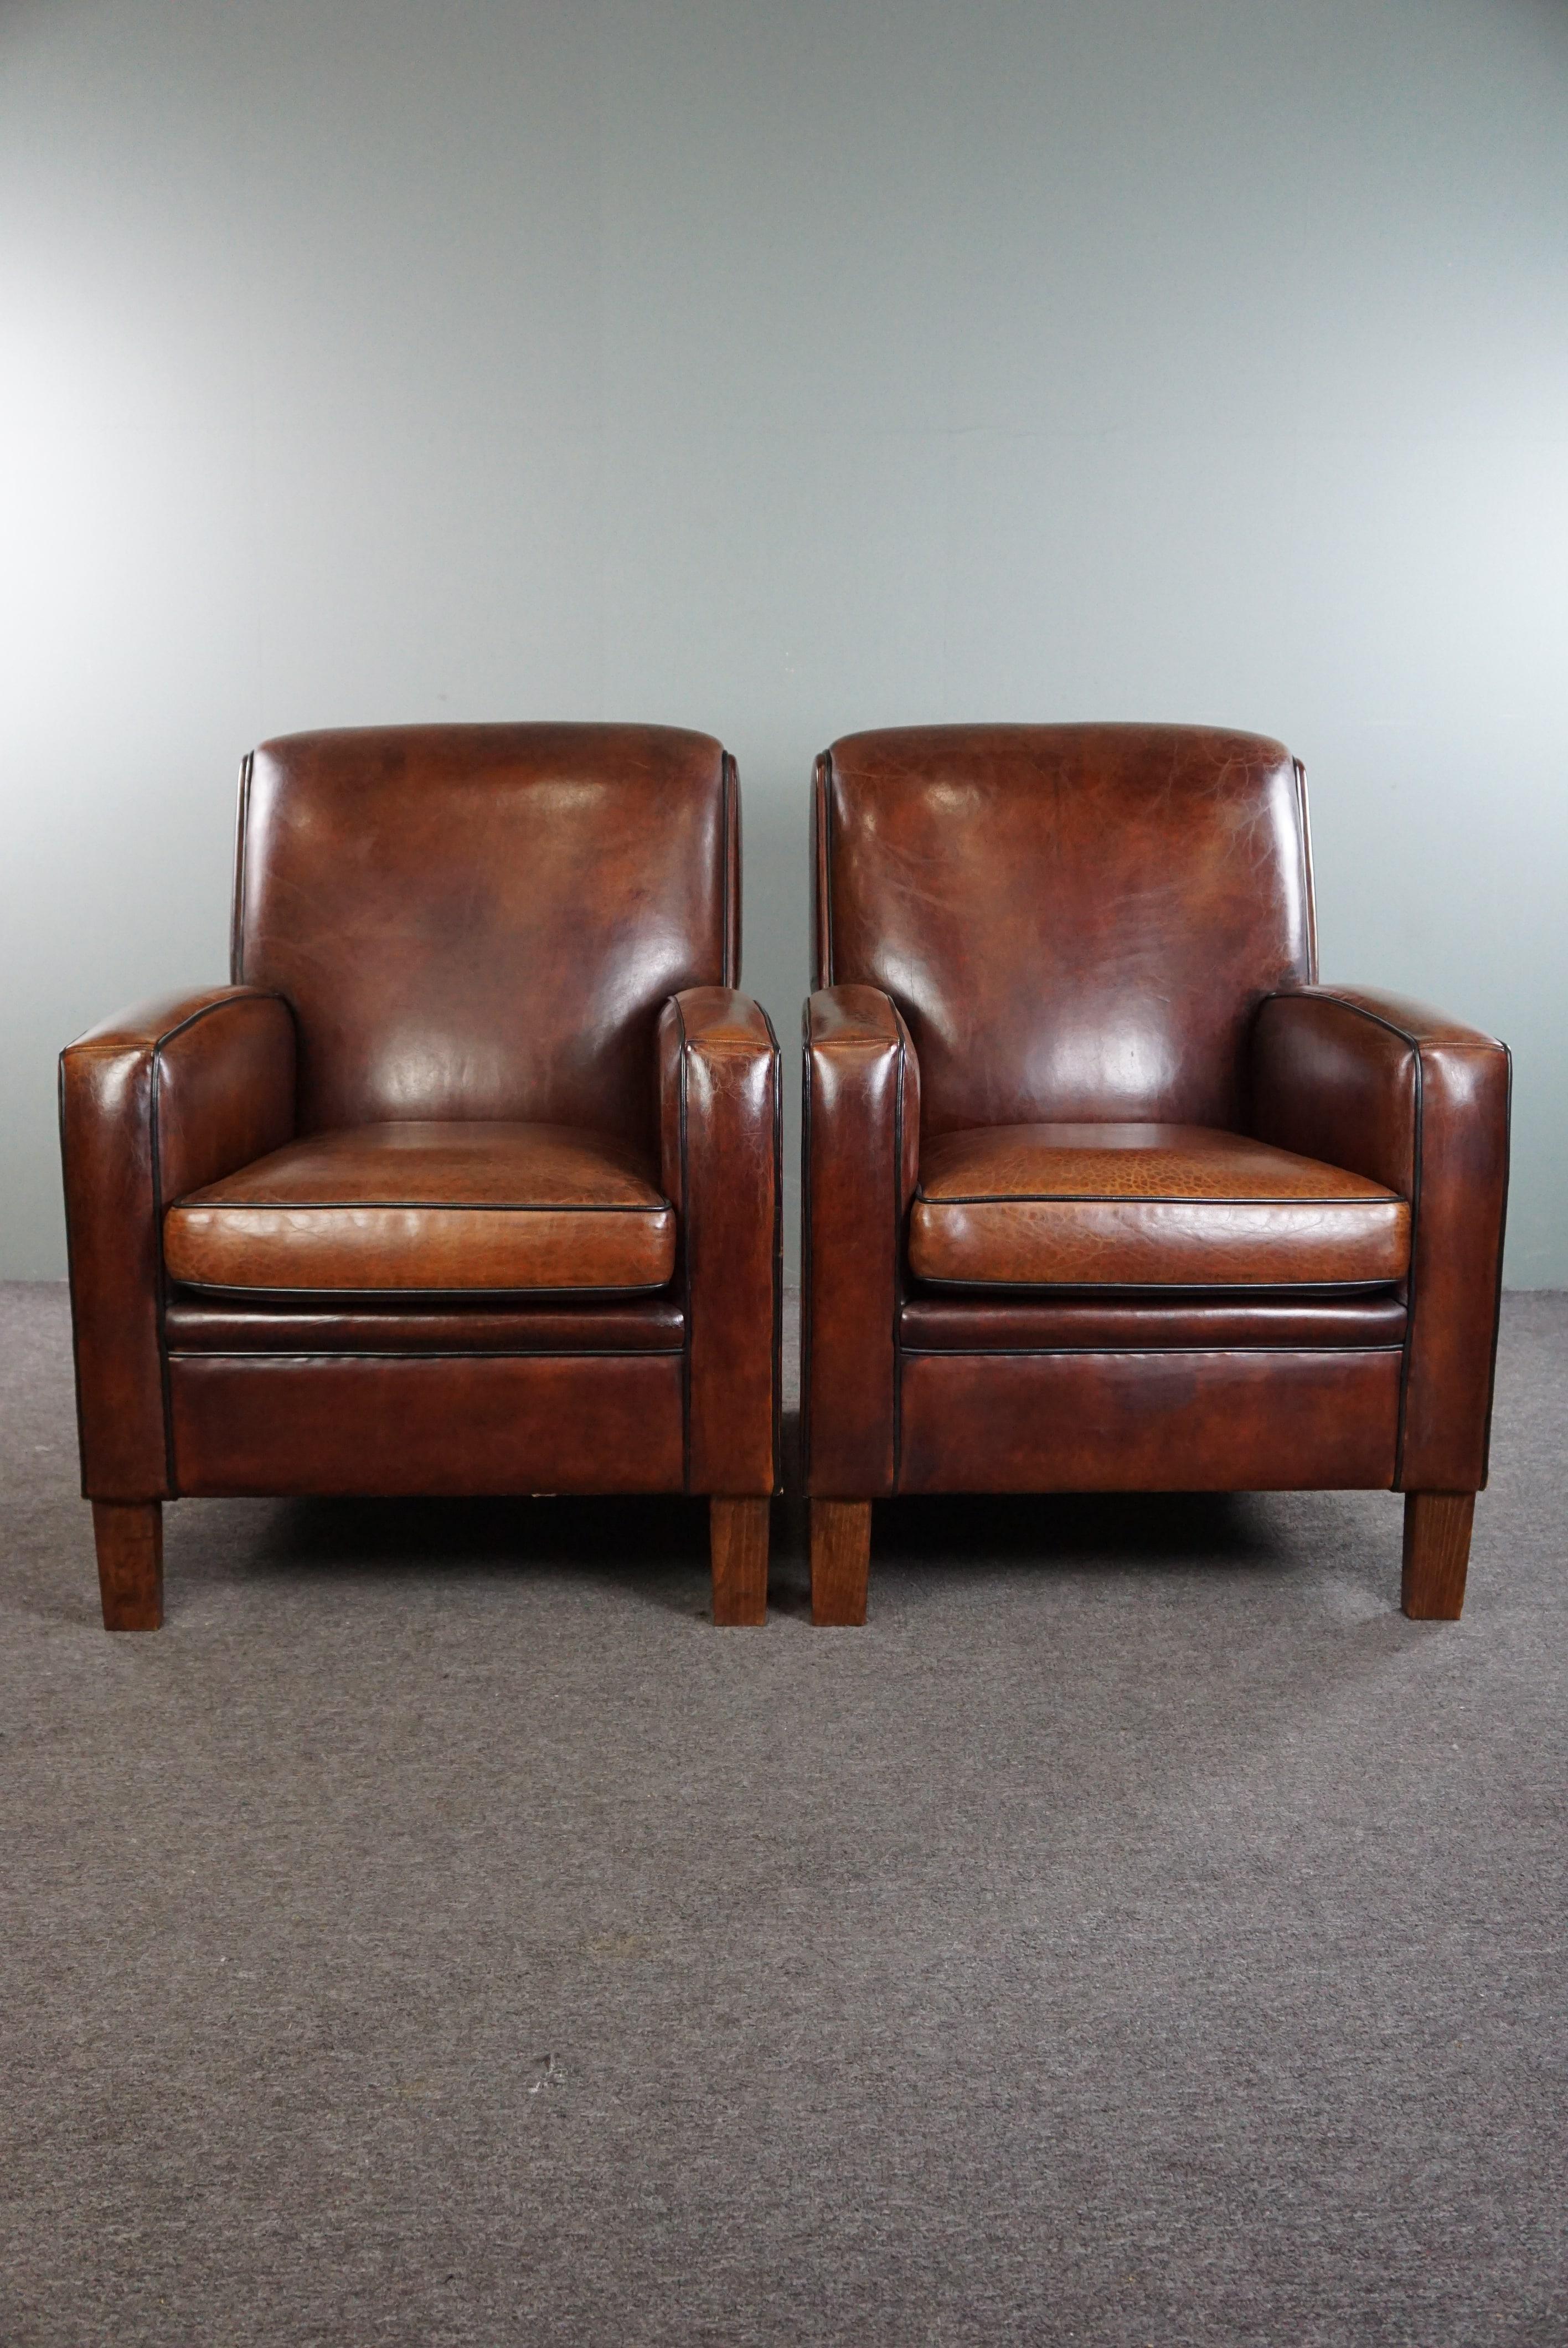 Angeboten wird: dieses sehr schöne Set von 2 hochwertigen Art Deco Design Sesseln aus erstklassigem Schafsleder.

Dieses atemberaubende Set, das nur aus den besten MATERIALEN hergestellt wird, verfügt über ein abnehmbares Sitzkissen und bietet